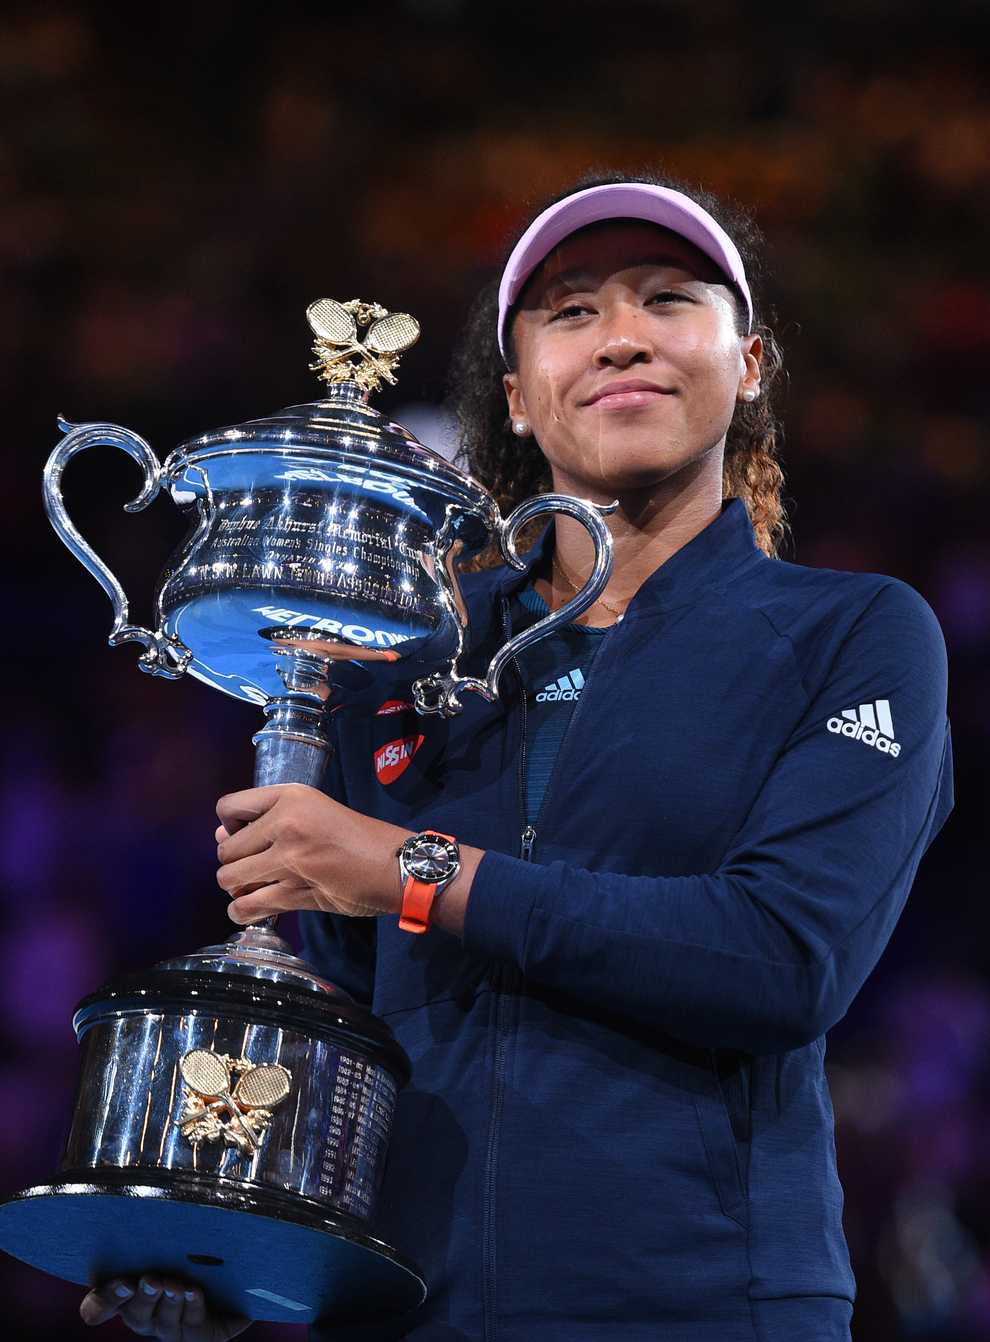 Osaka has won the US Open and Australian Open titles